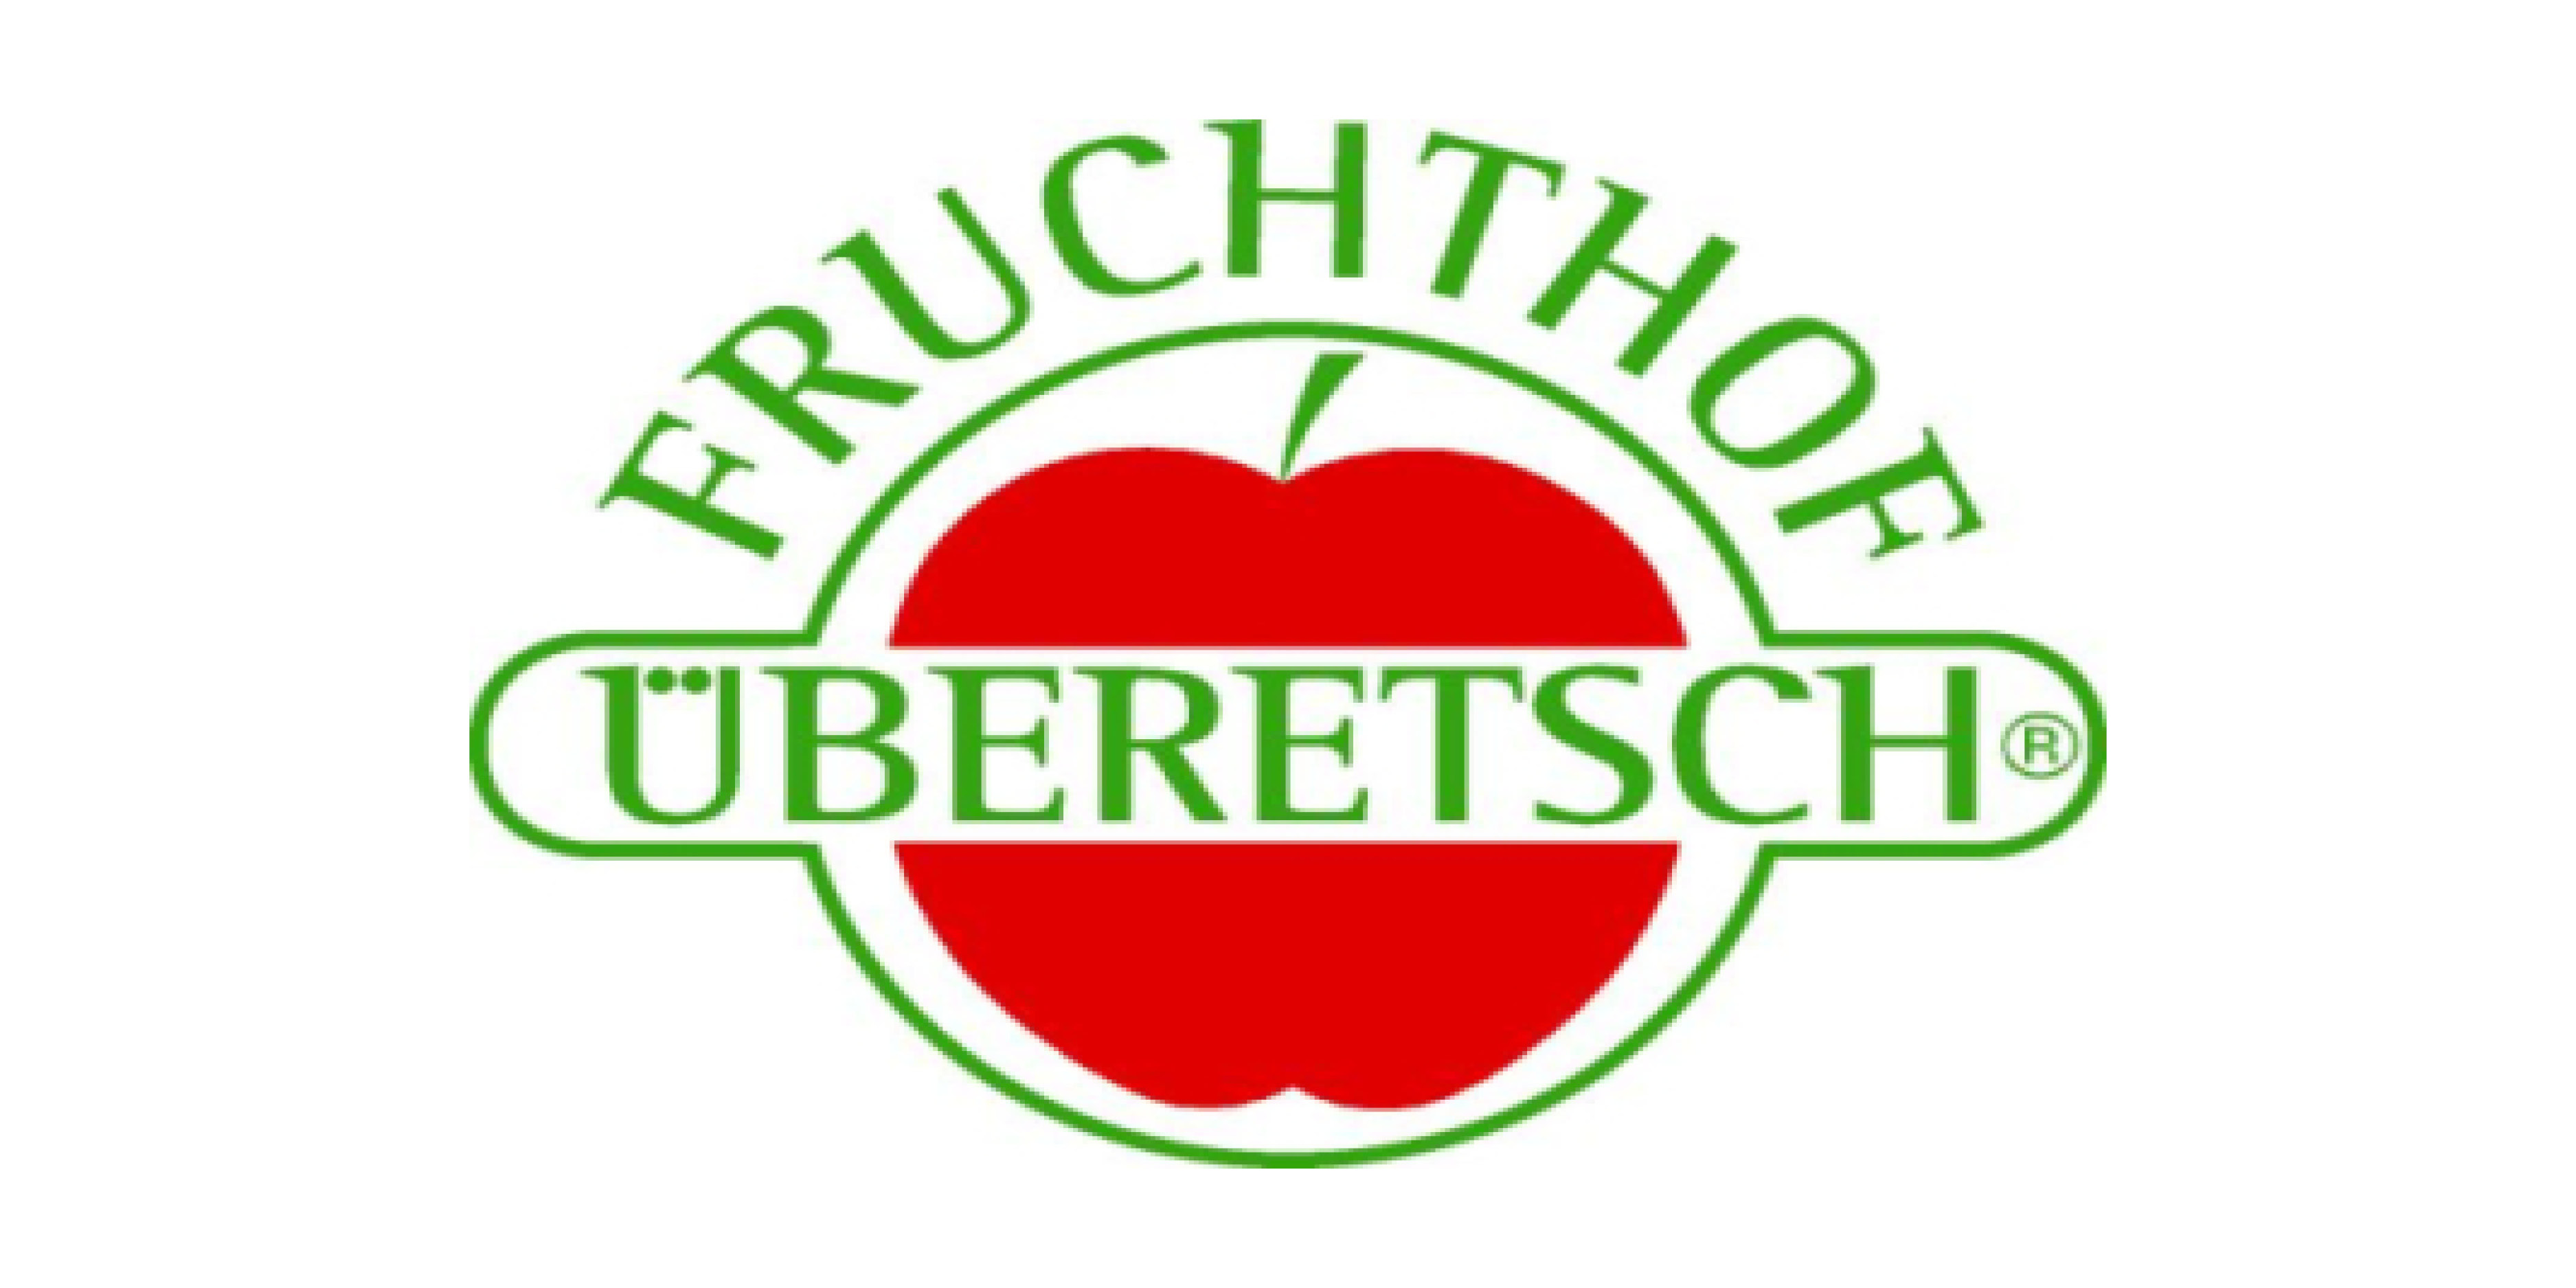 Fruchthof Überetsch Landwirtschaftliche Gesellschaft | Soc. Agricola Coop.